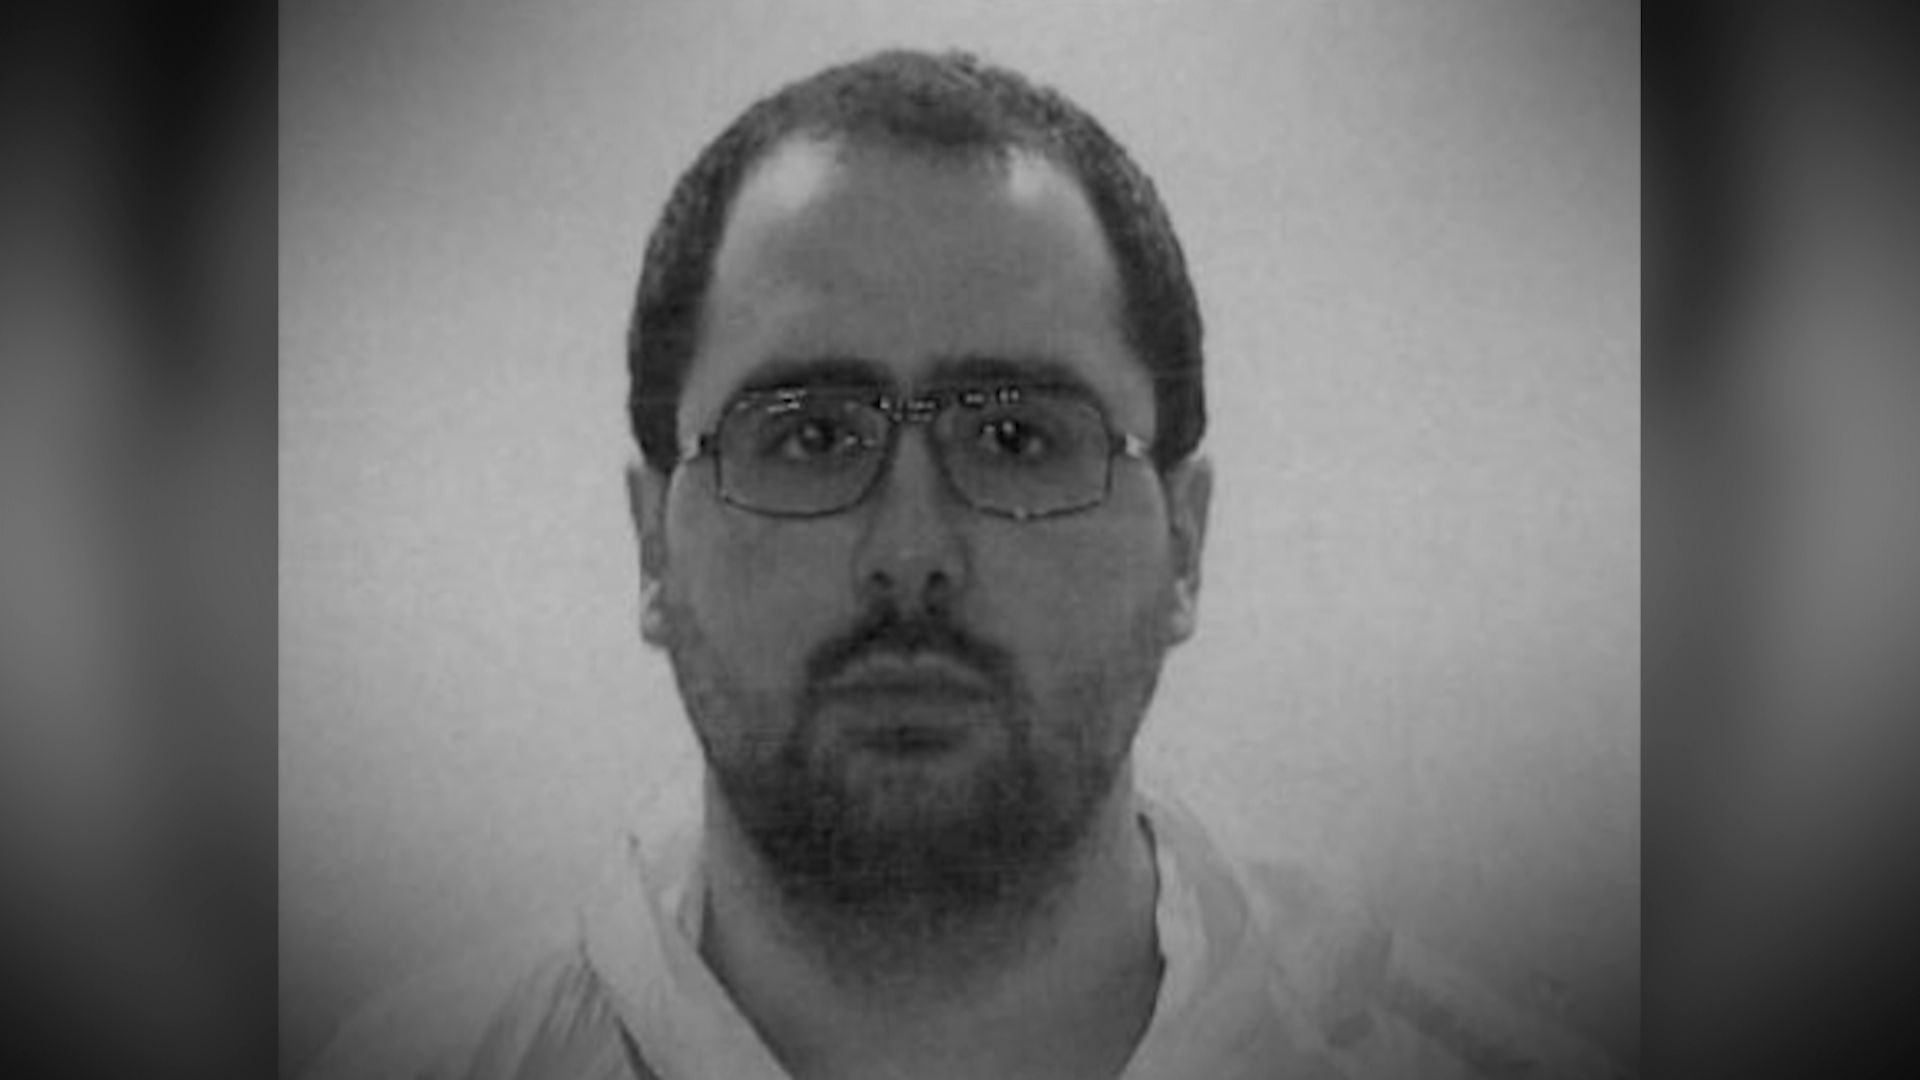 Bilal El Makhoukhi, déjà condamné en 2015 lors du procès Sharia4Belgium.